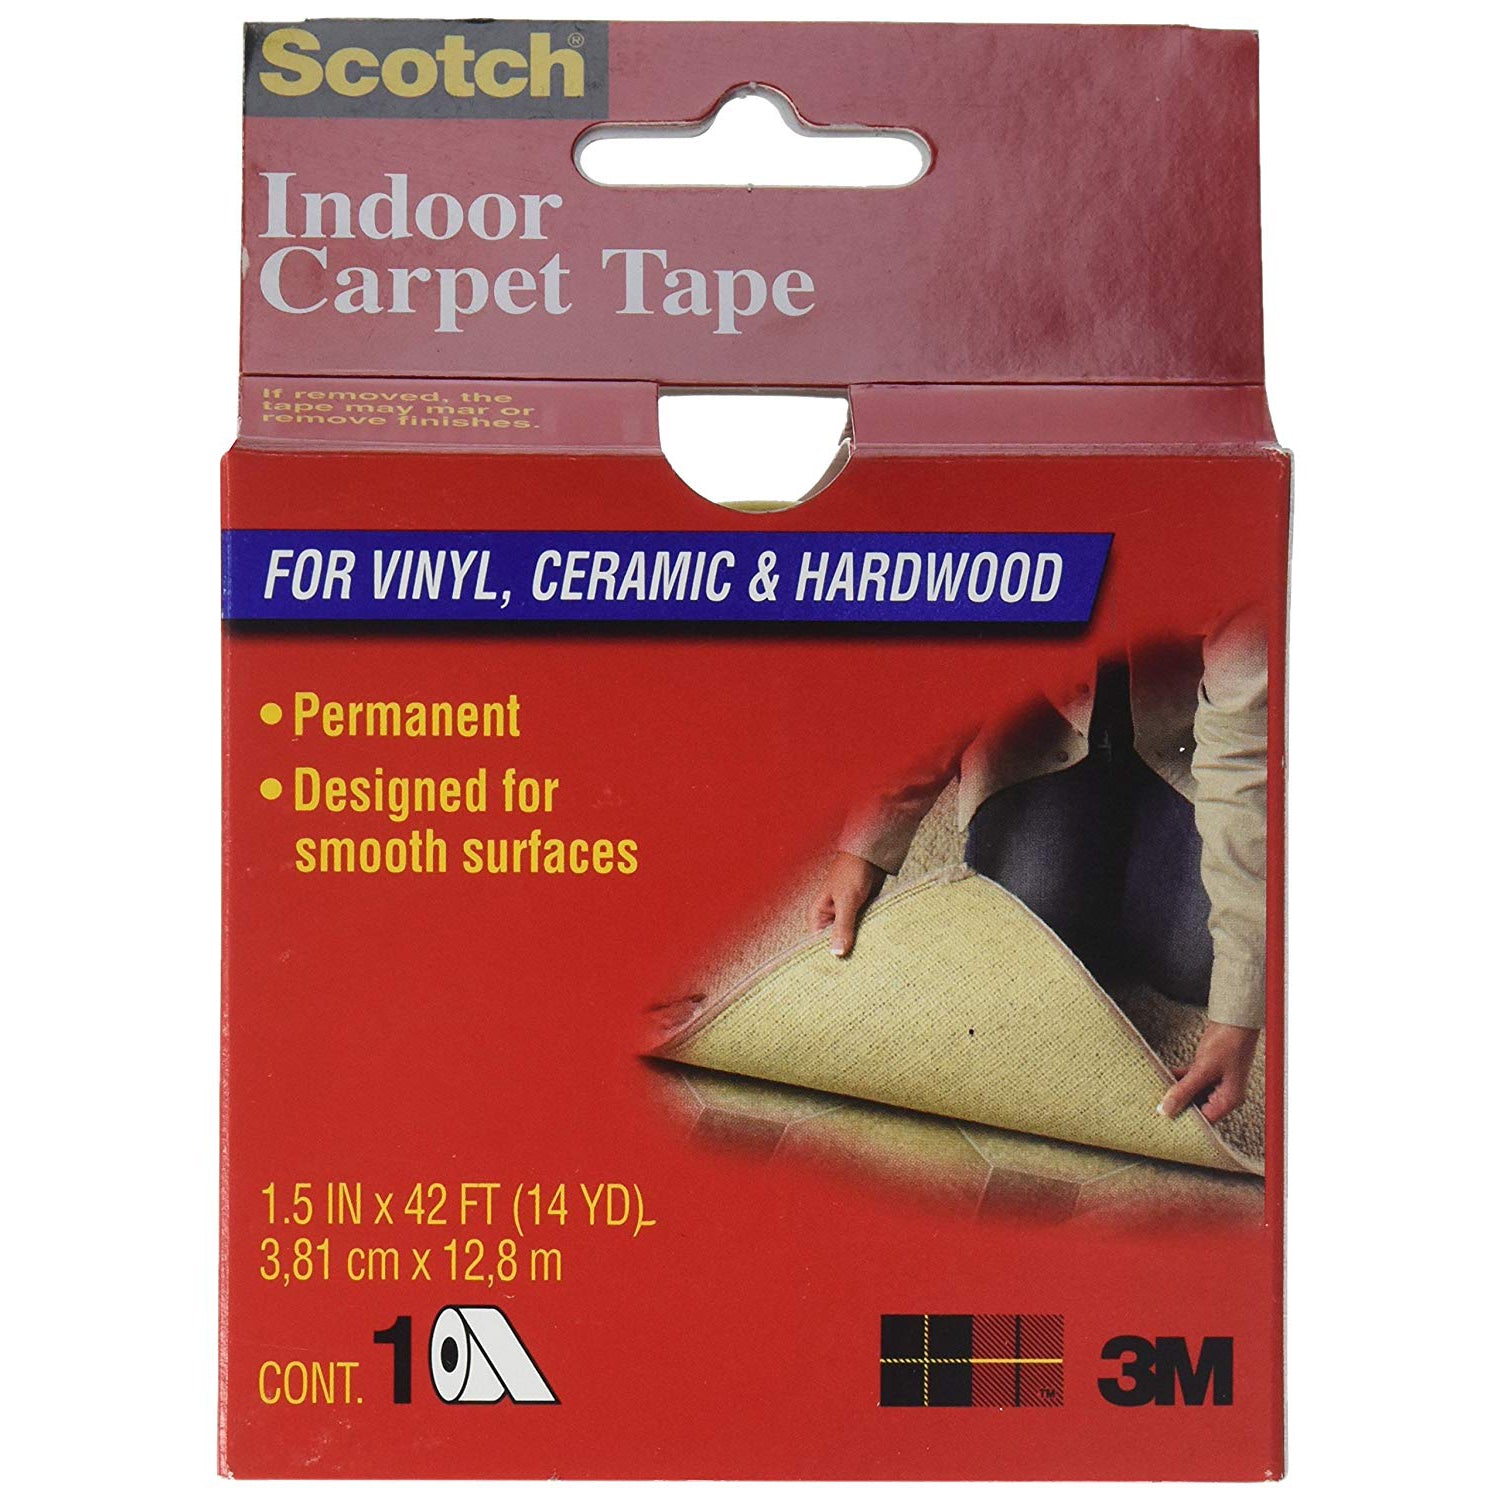 Scotch Indoor Carpet Tape